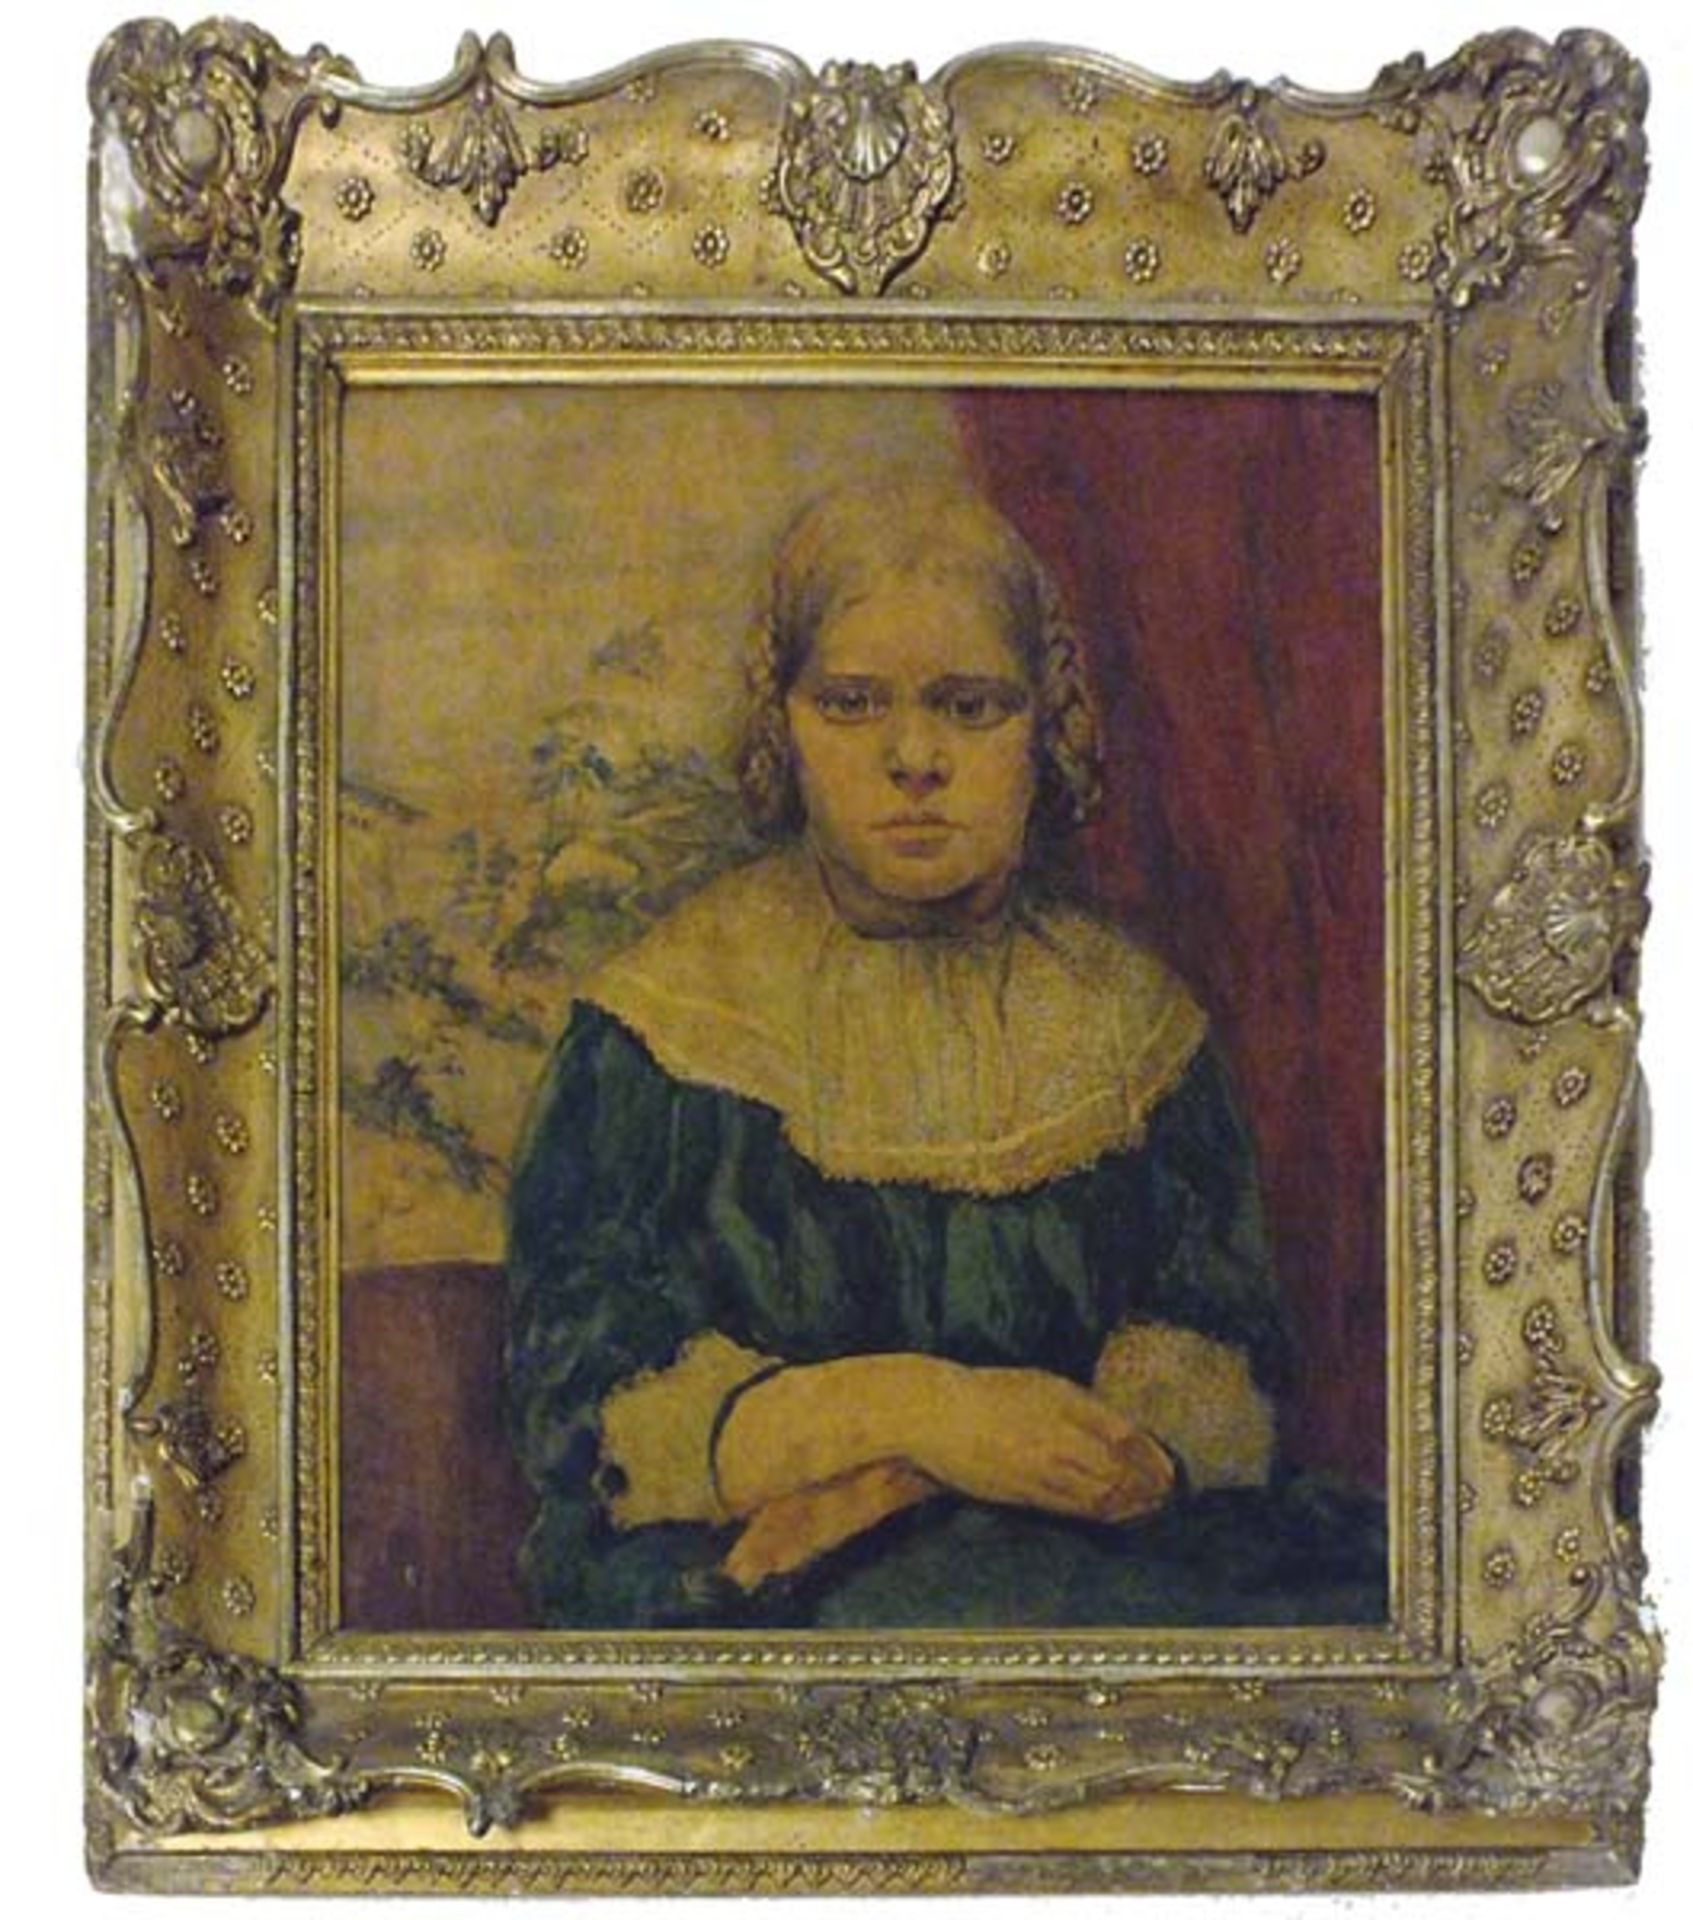 Kuhfuss, Paul(Berlin 1883 - 1960 Berlin)Tochter des Malers (Edith Kuhfuss - 8 Jahre alt)Ölfarben auf